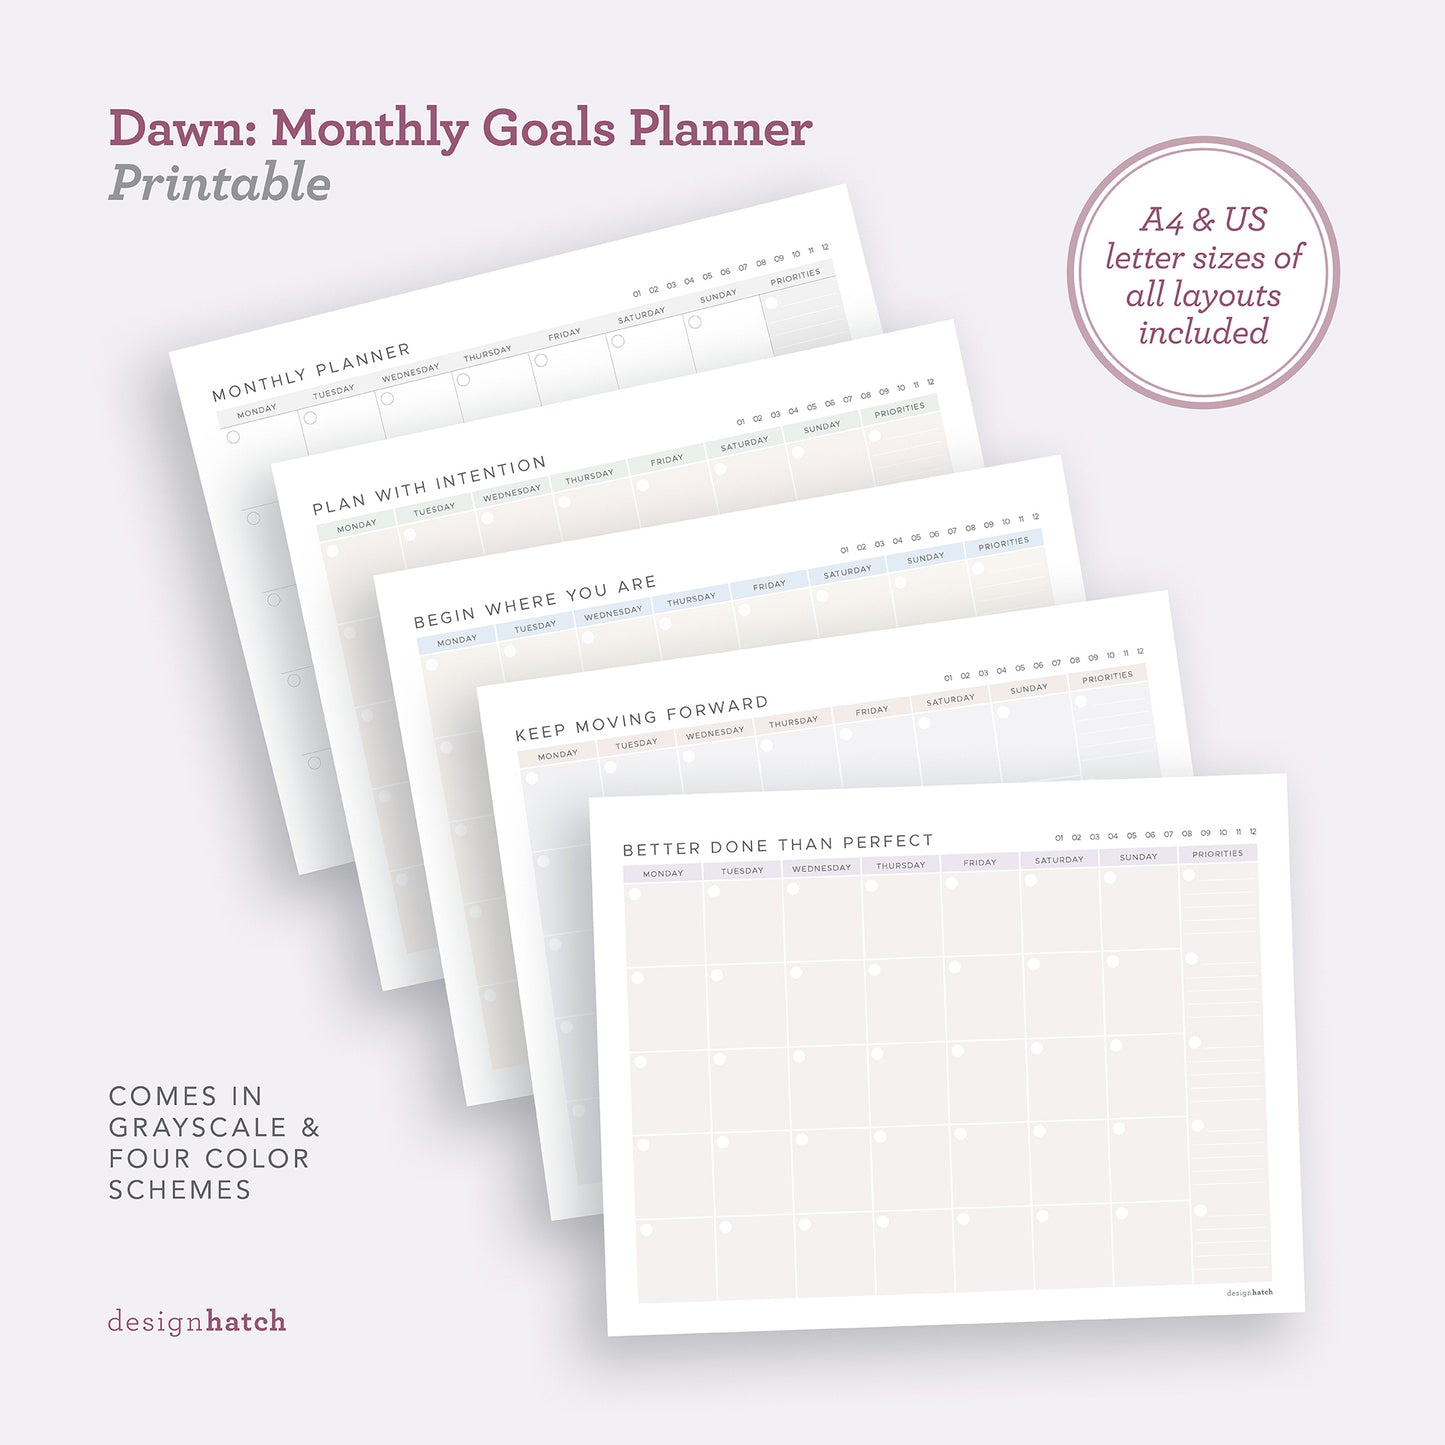 Dawn: Monthly Goals Planner